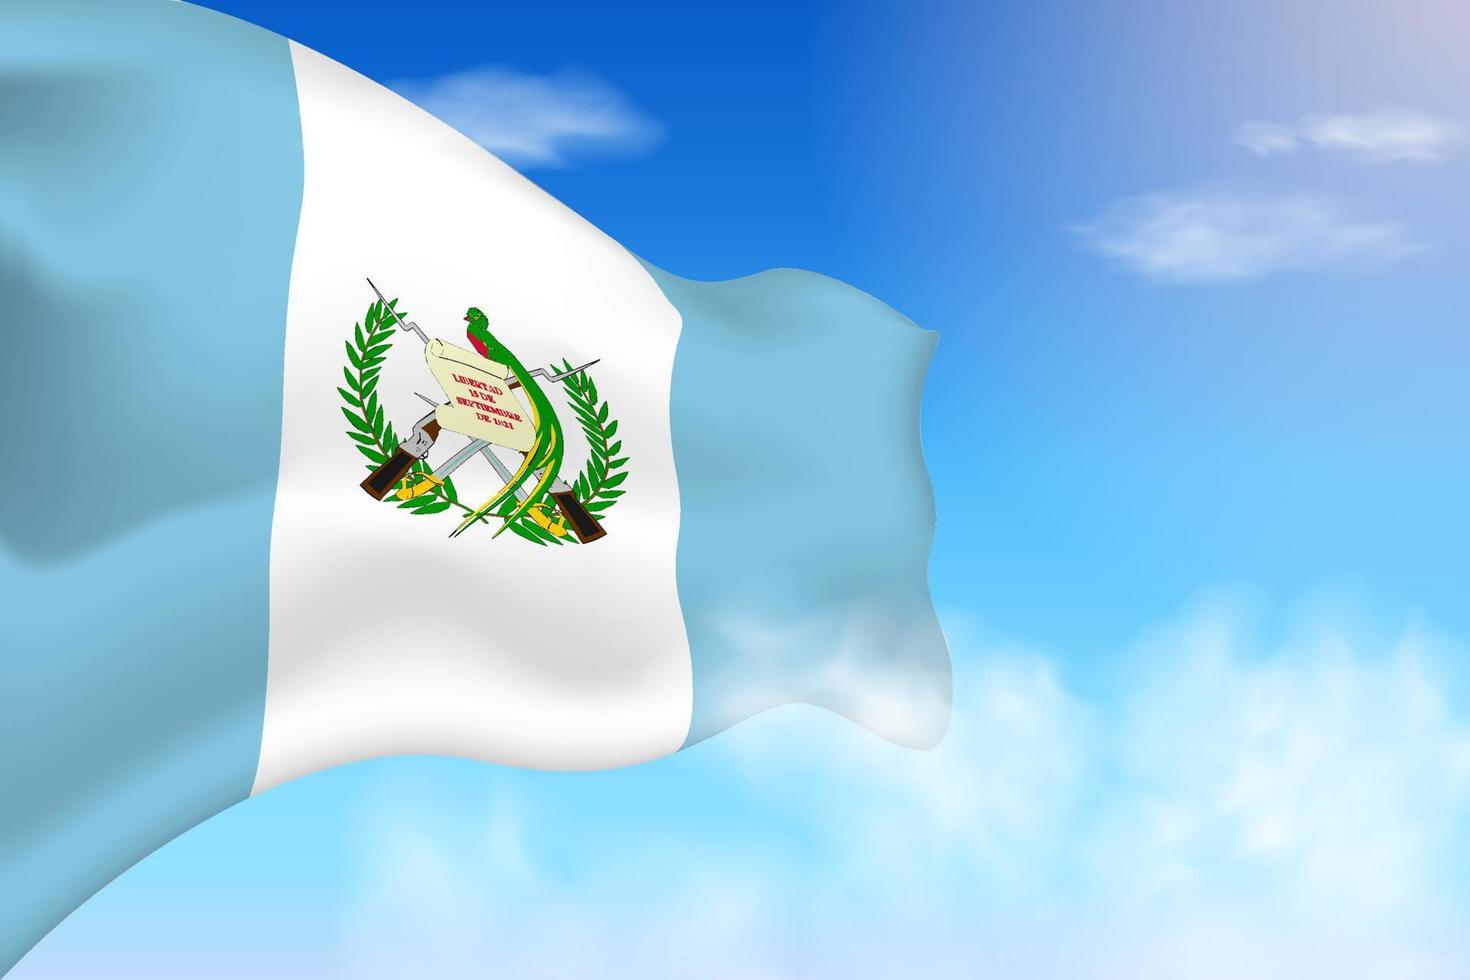 bandeira da guatemala nas nuvens. bandeira vetorial acenando no céu. ilustração de bandeira realista do dia nacional. vetor de céu azul.